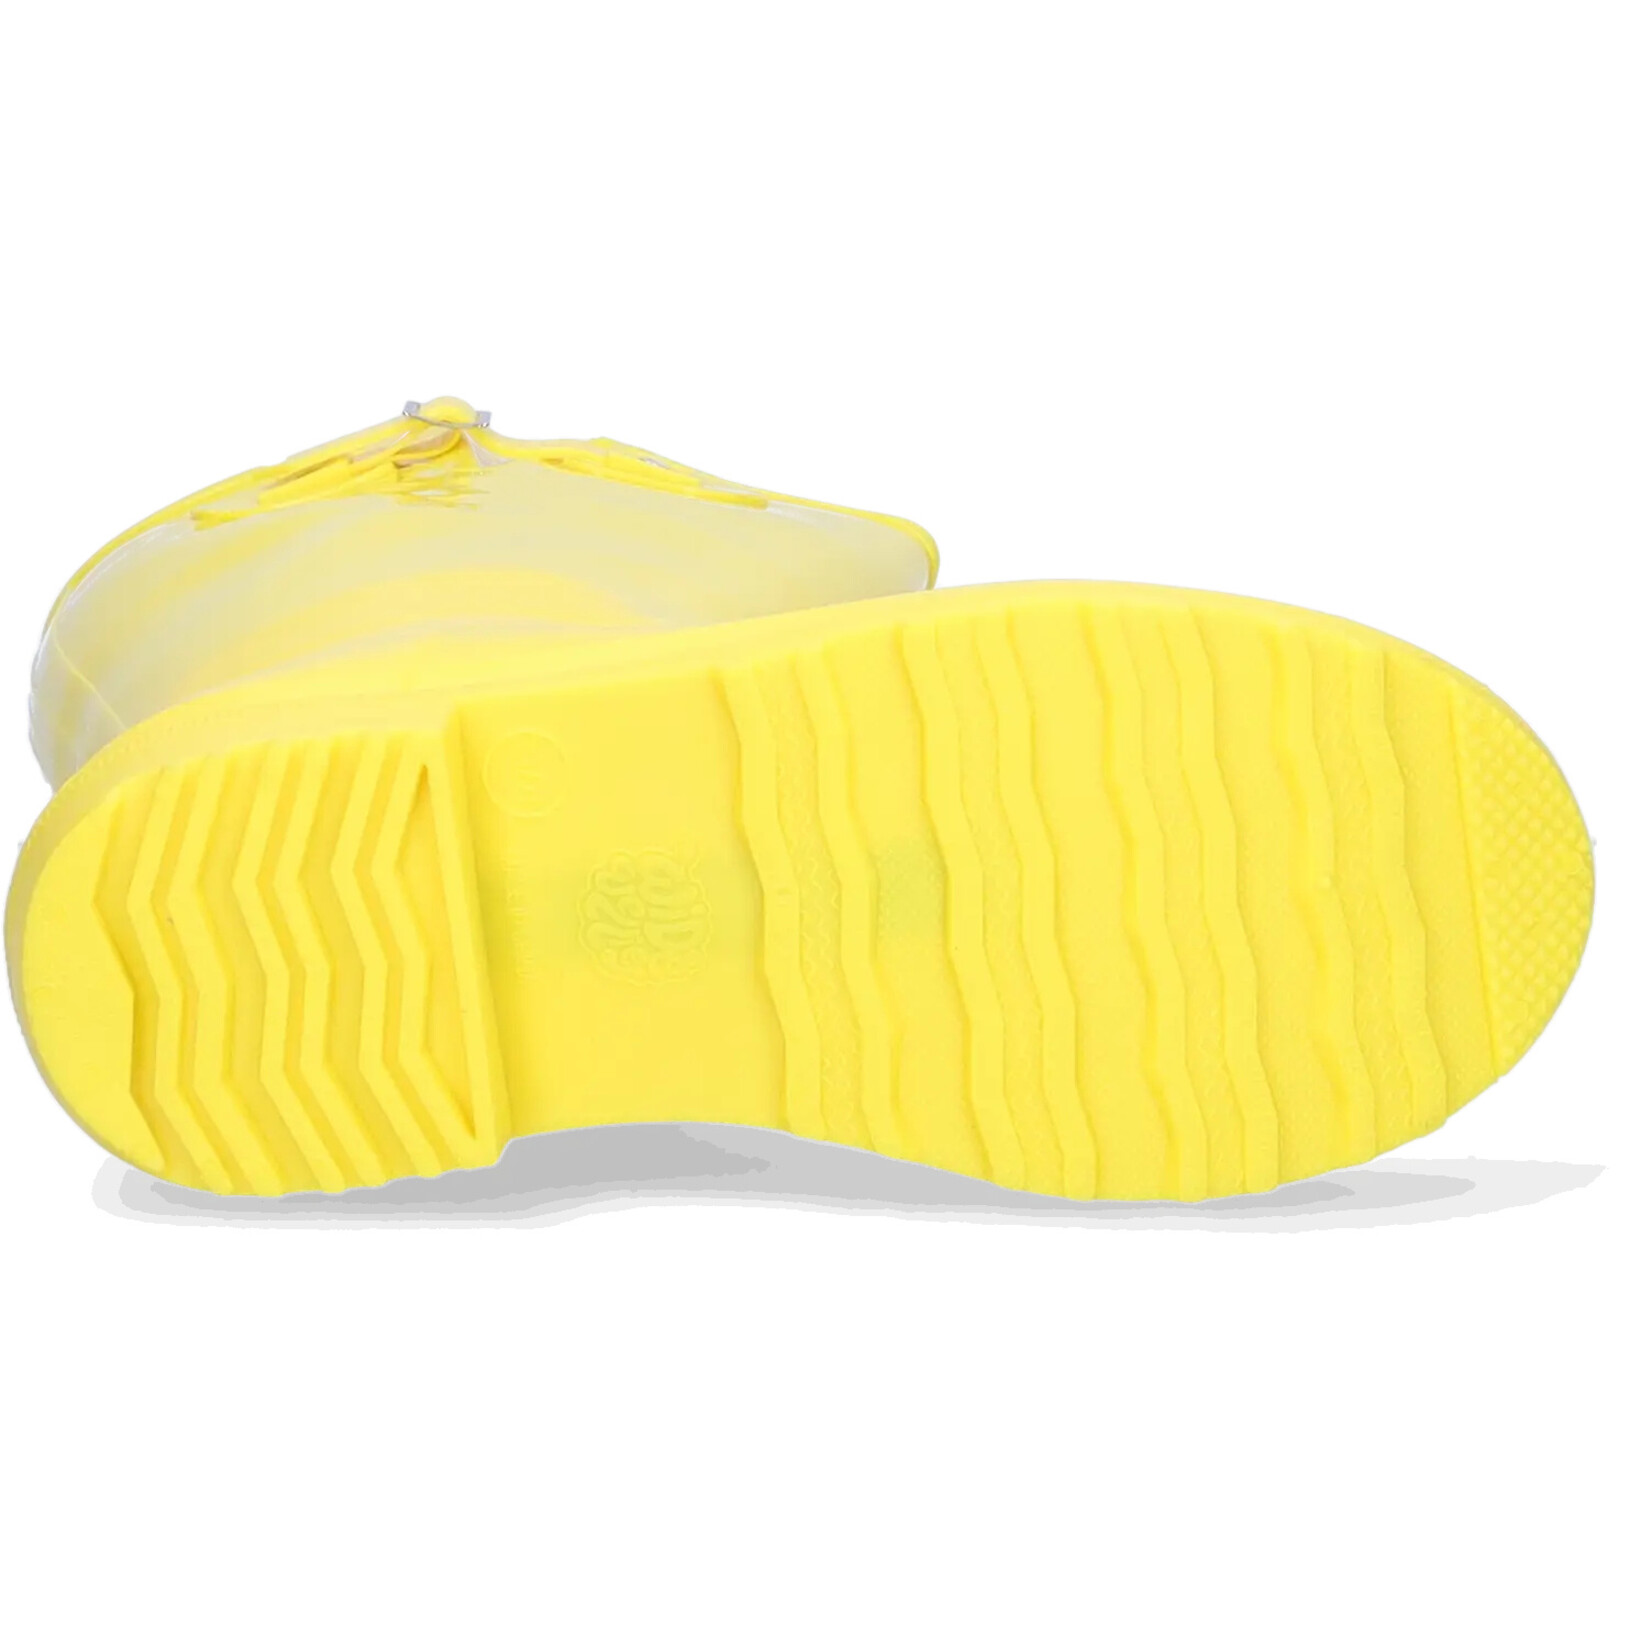 JJ Footwear Wellies - Yellow